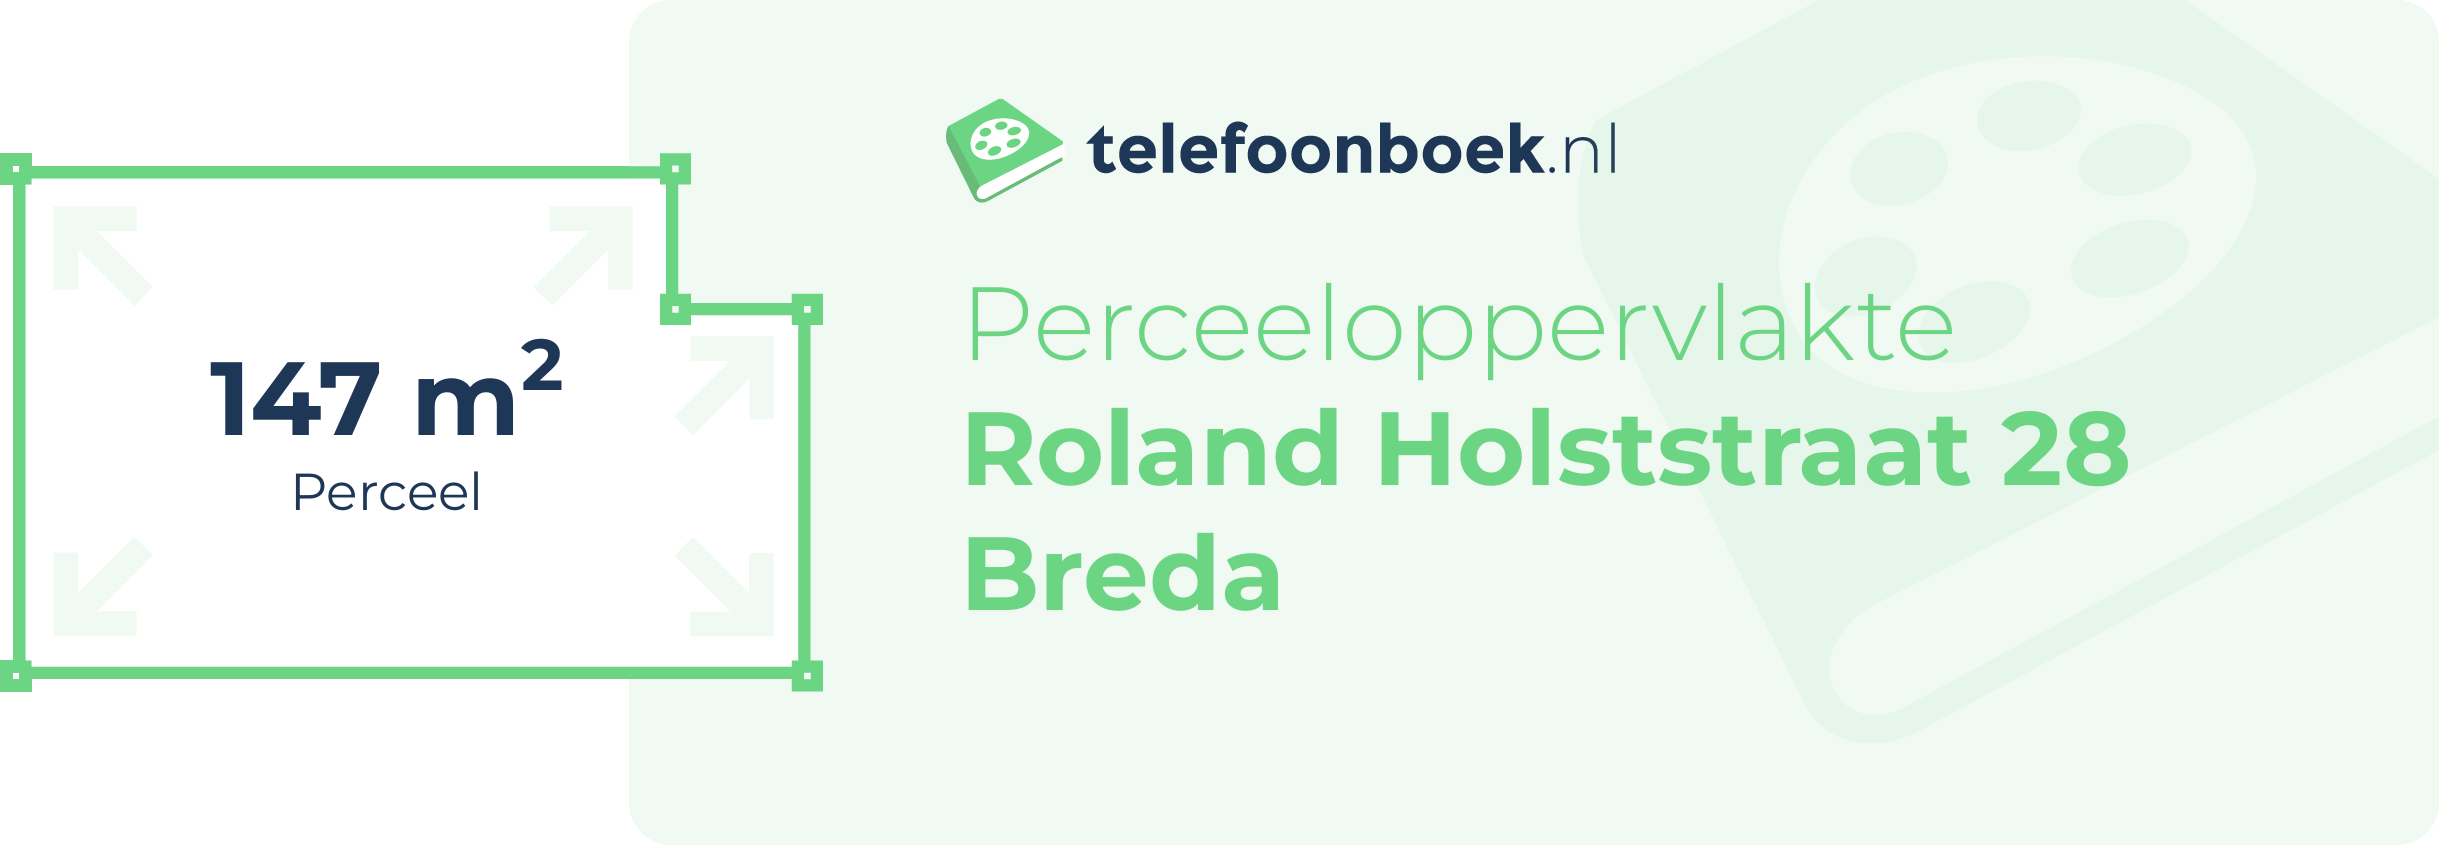 Perceeloppervlakte Roland Holststraat 28 Breda